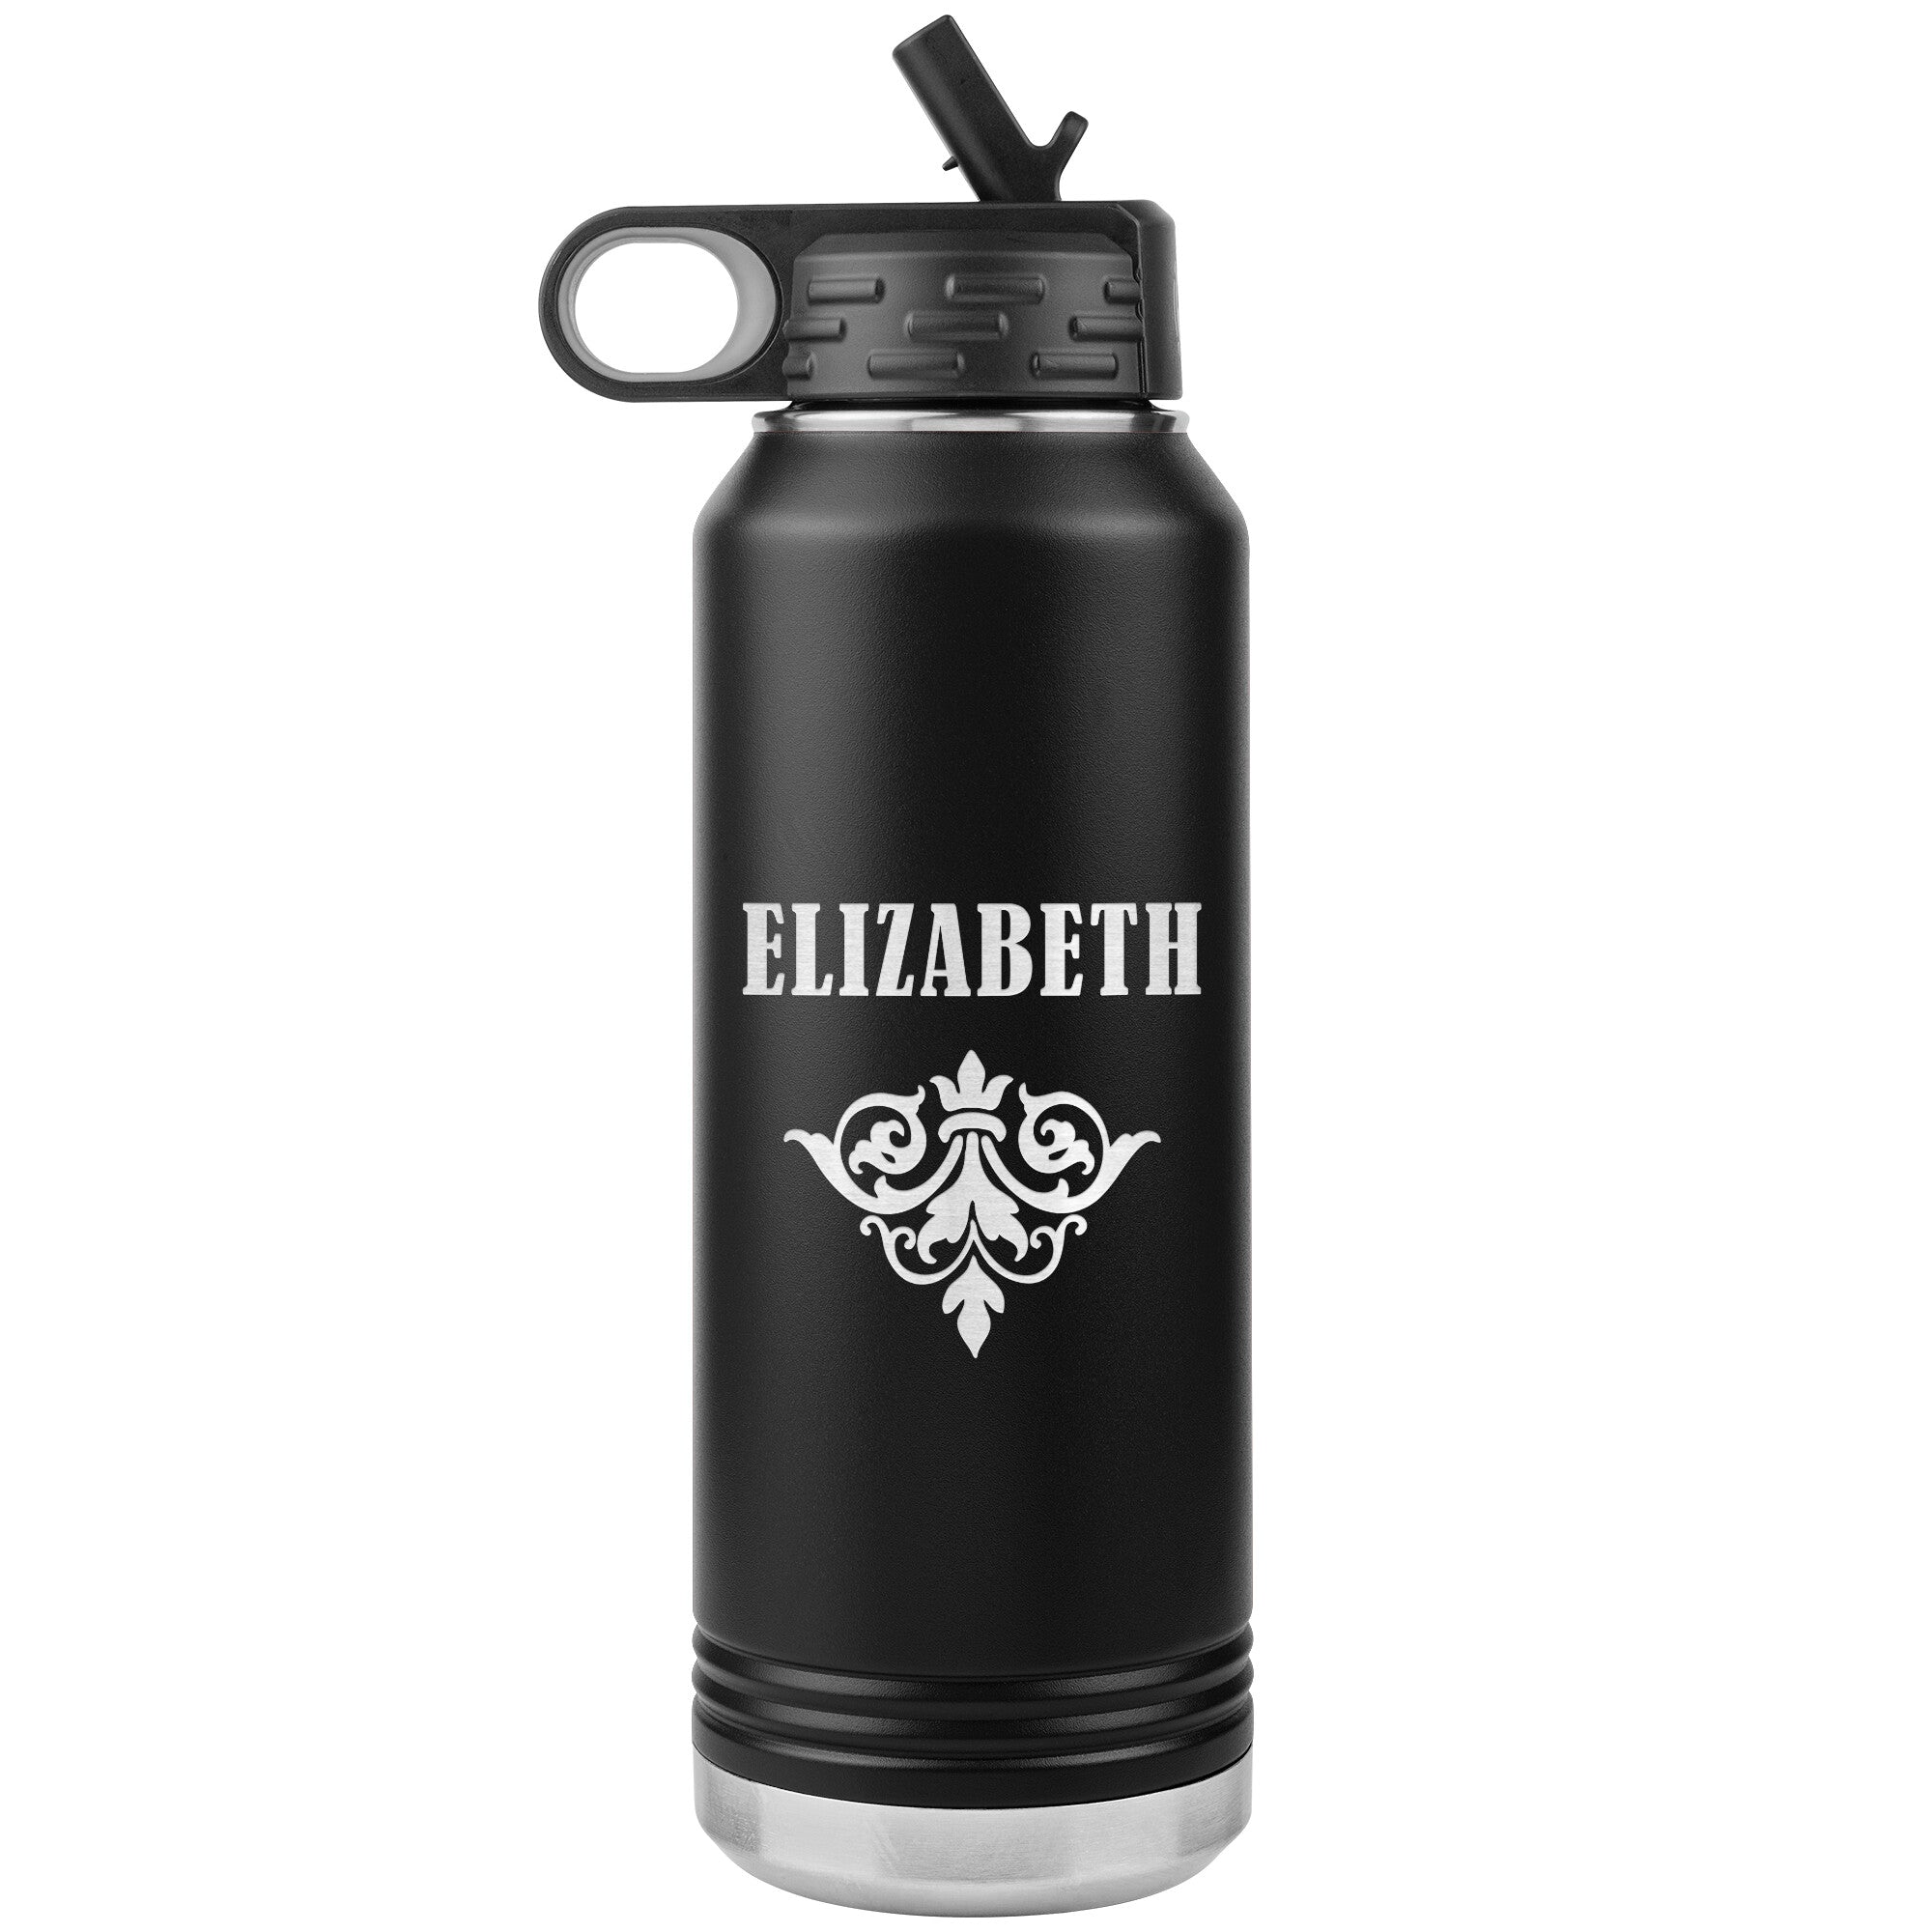 Elizabeth v01 - 32oz Insulated Water Bottle